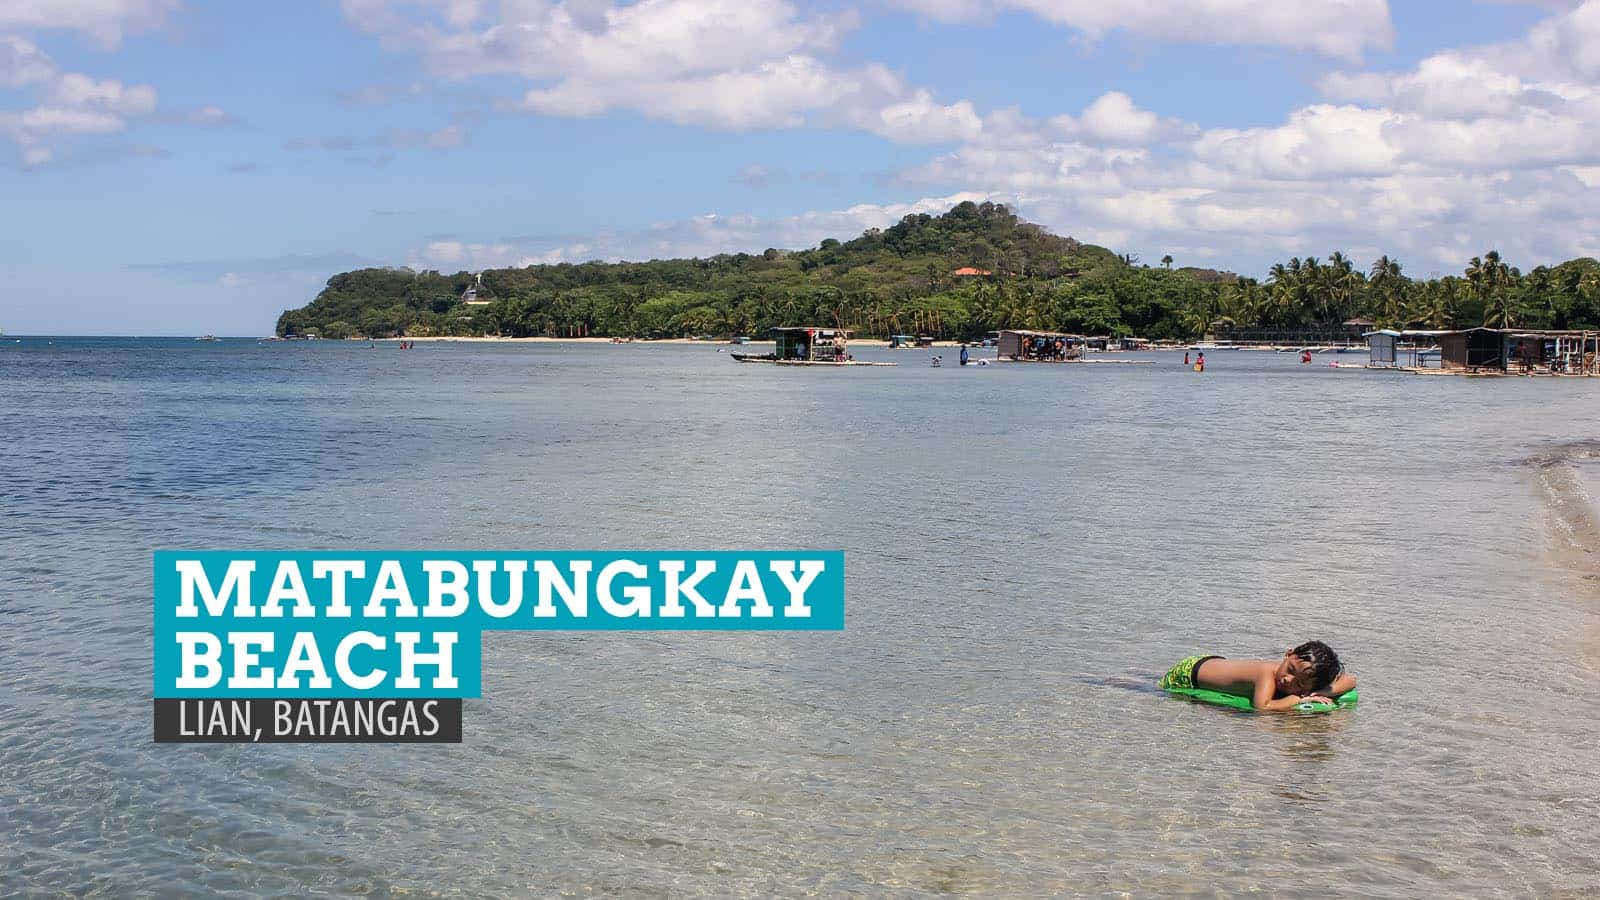 Matabungkay Beach: Littered Memories in Batangas, Philippines